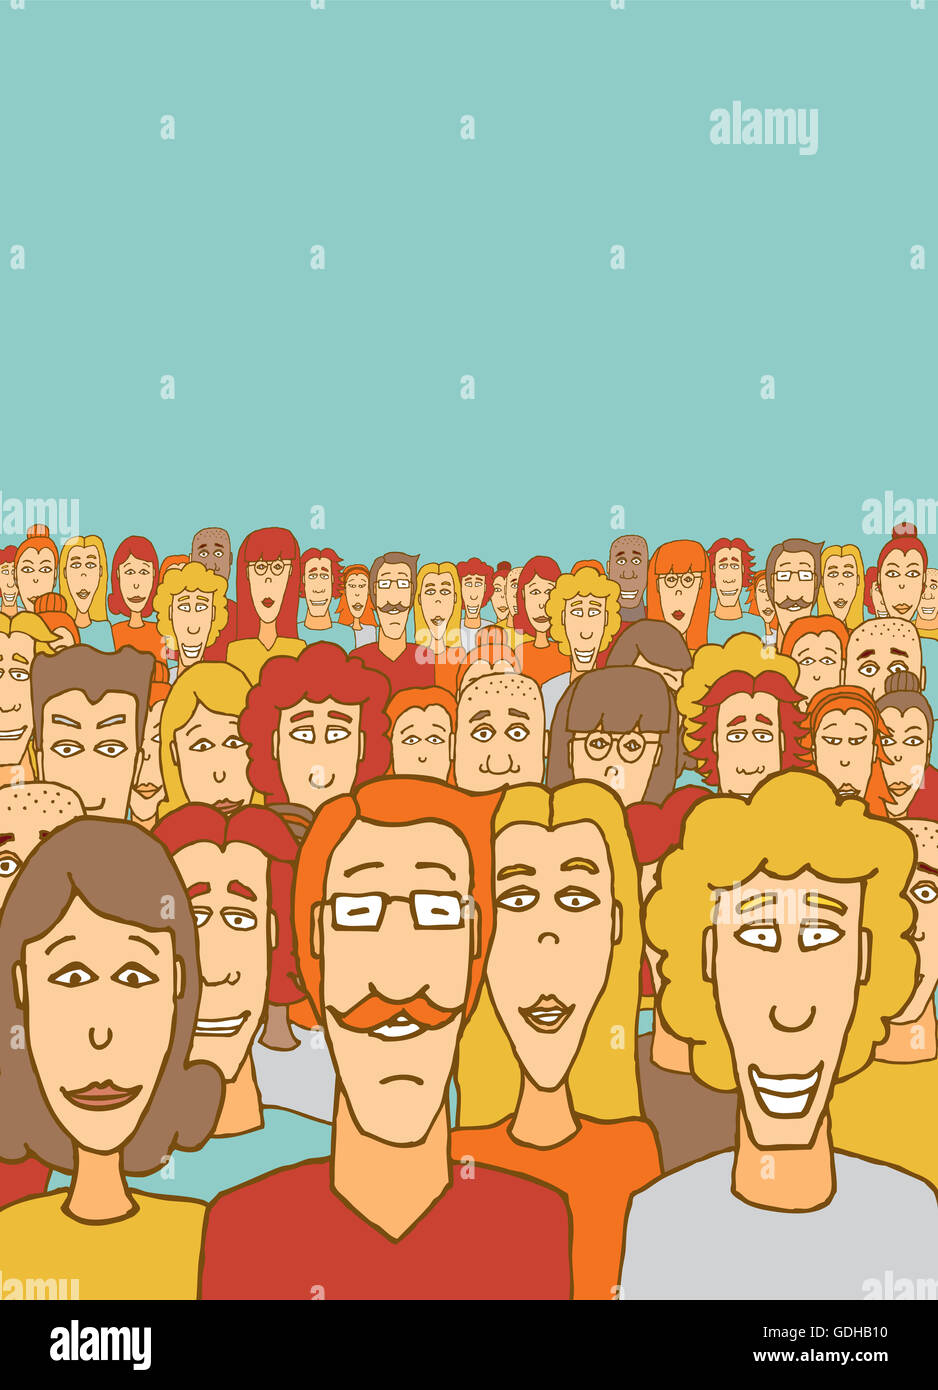 Cartoon illustration d'une grande foule community Banque D'Images